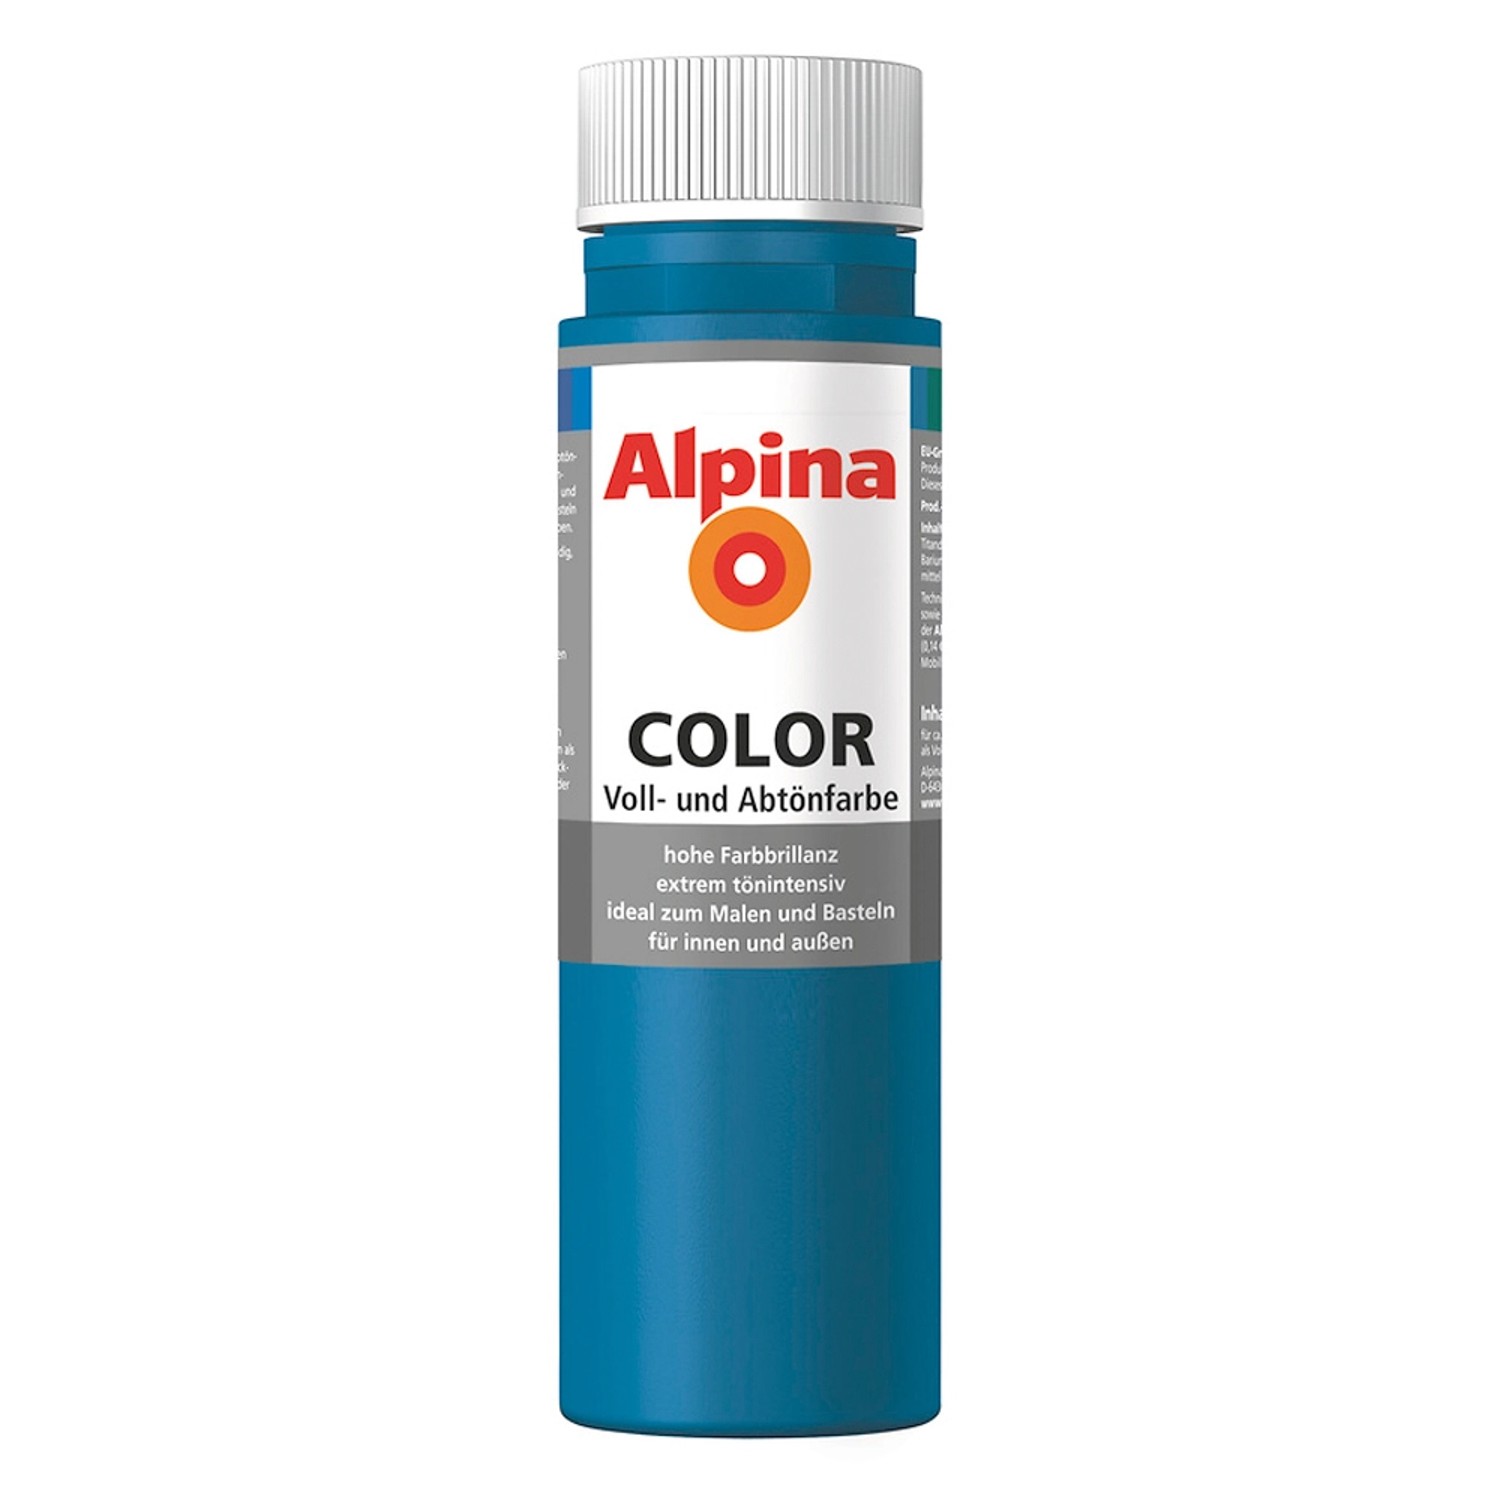 Alpina Color Cool Blue seidenmatt 250 ml von Alpina